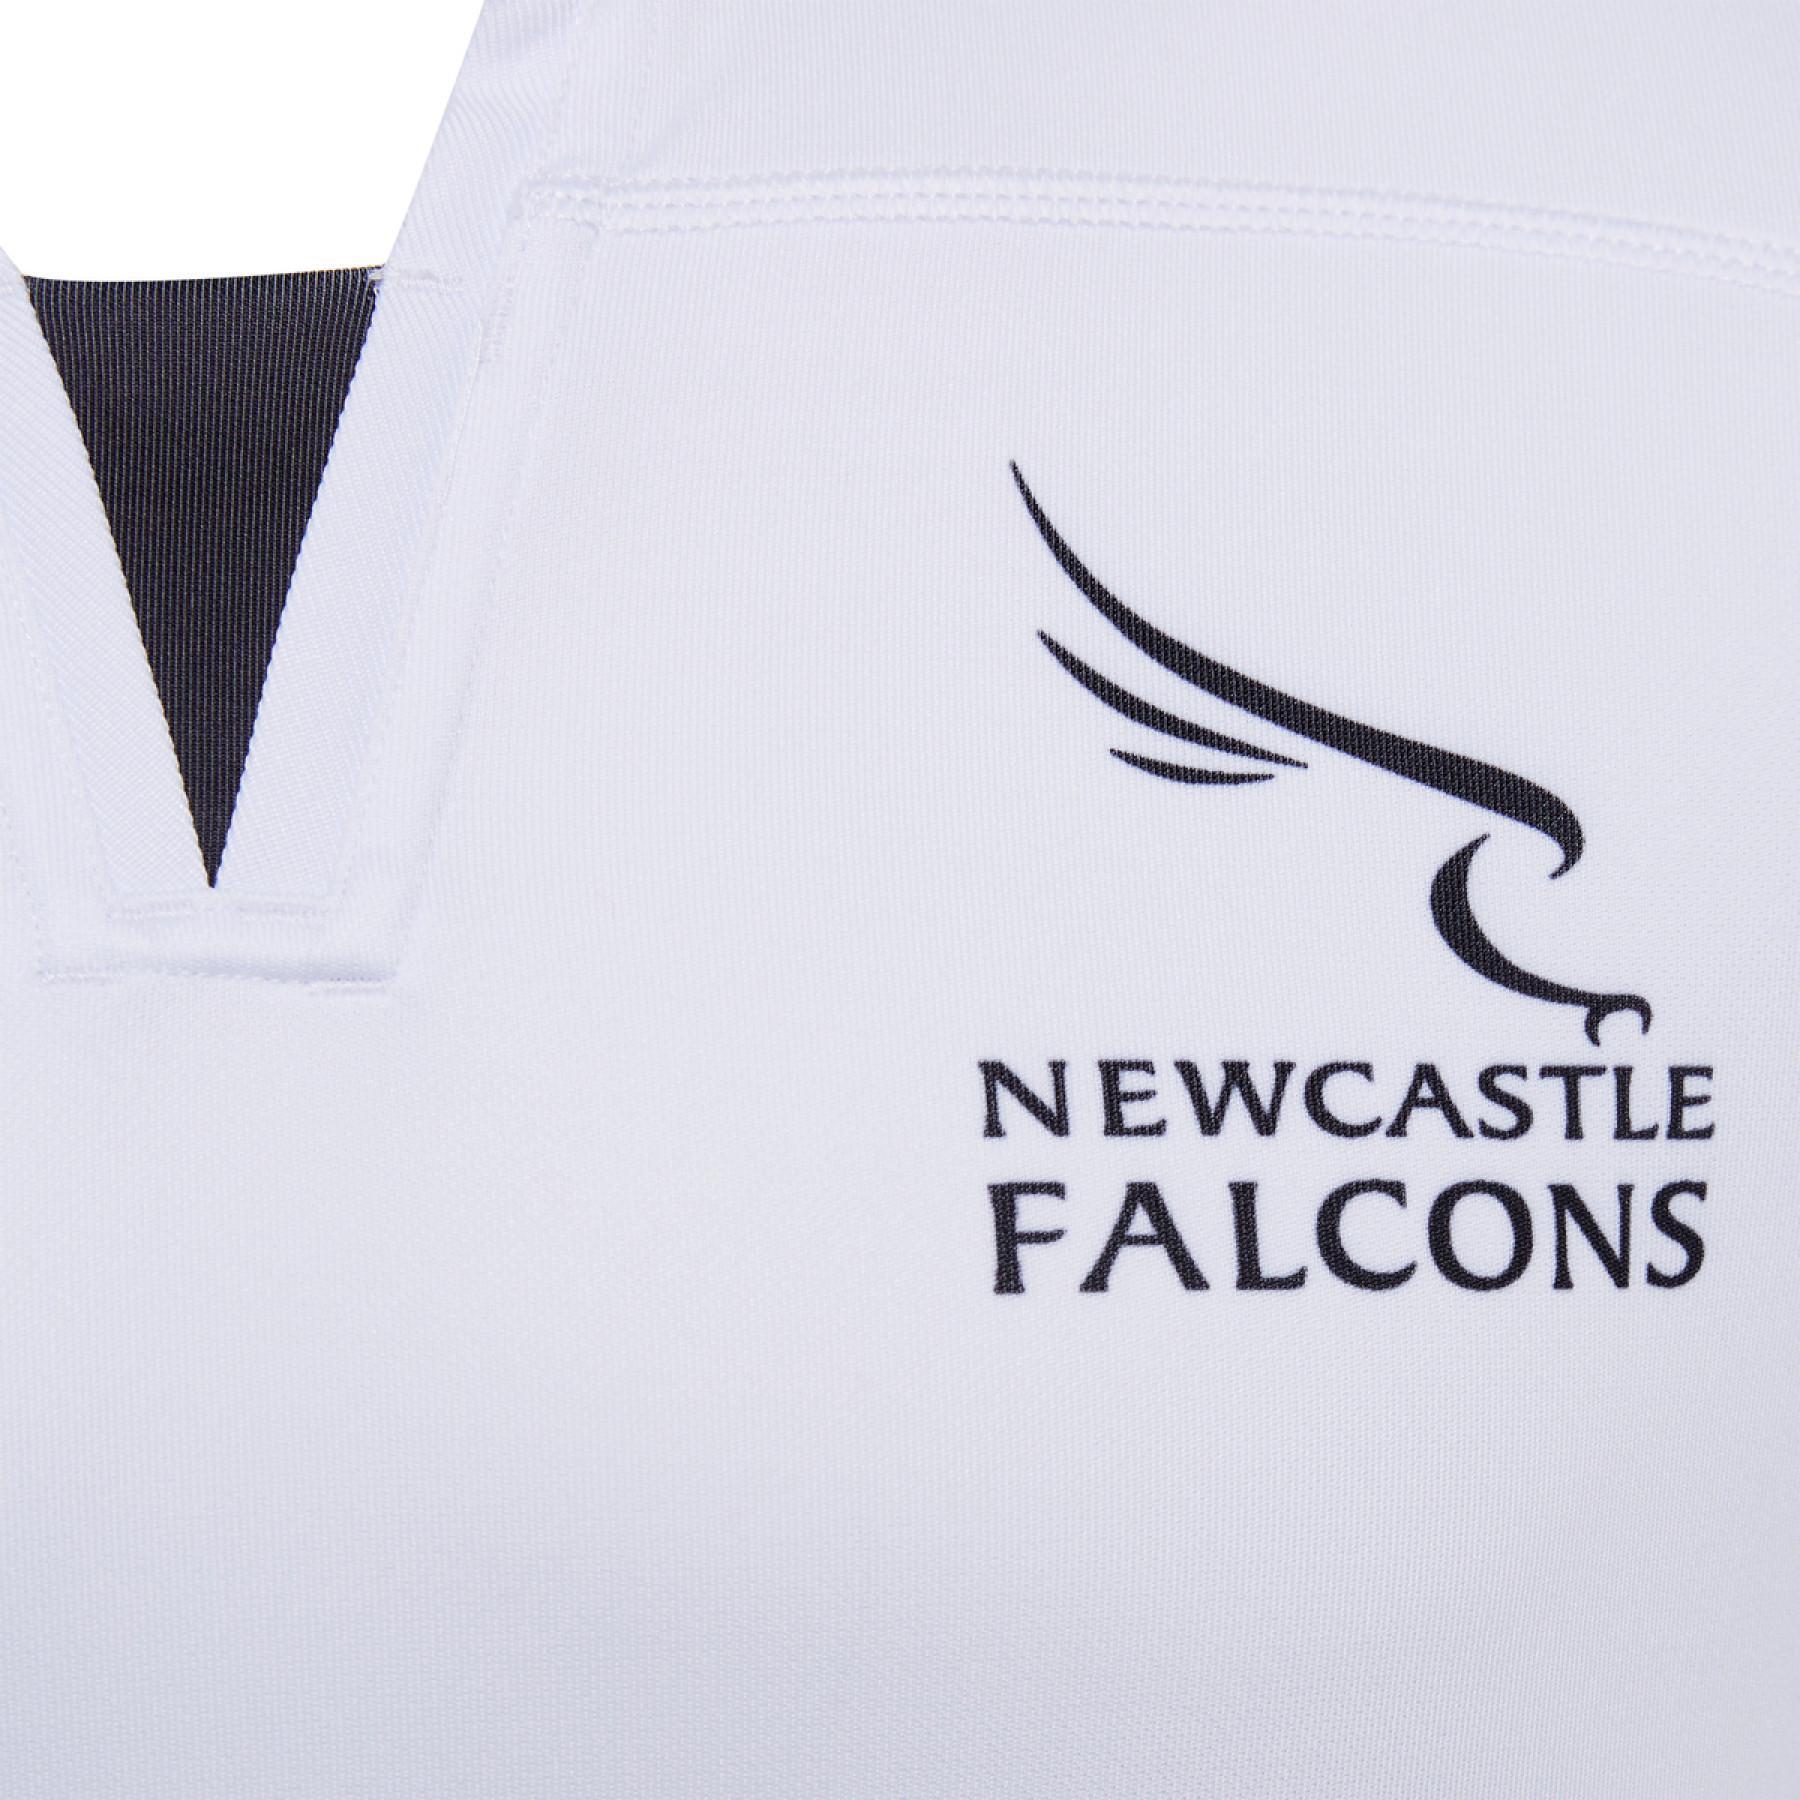 Maillot extérieur Newcastle falcons 2020/21